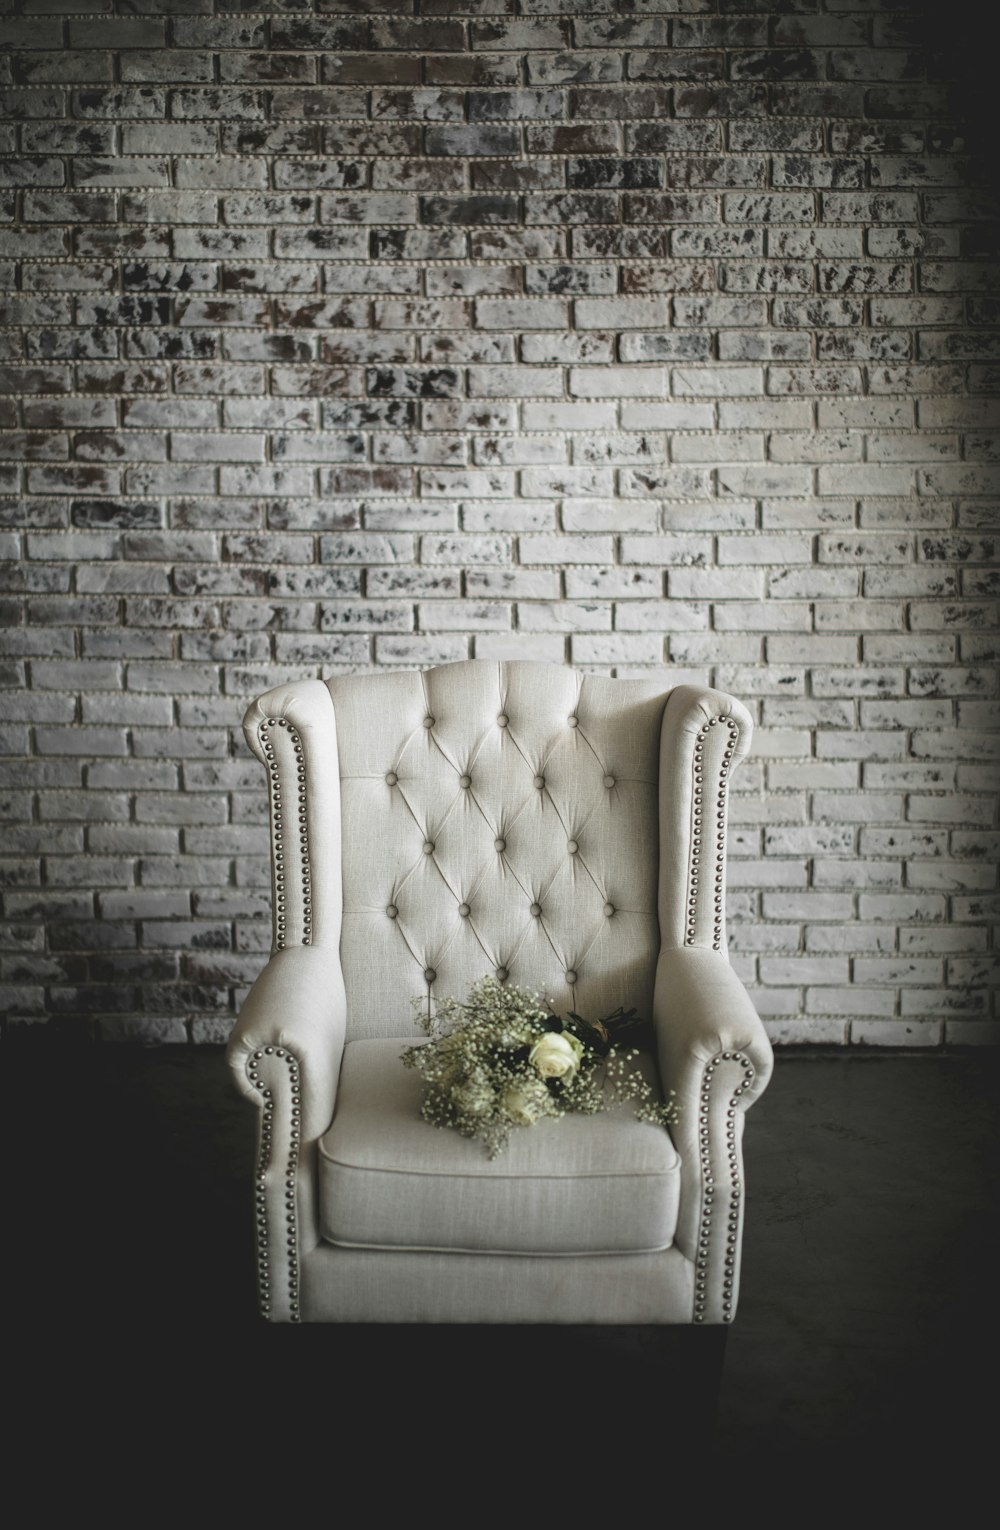 흰 안락 의자 위에 흰 꽃